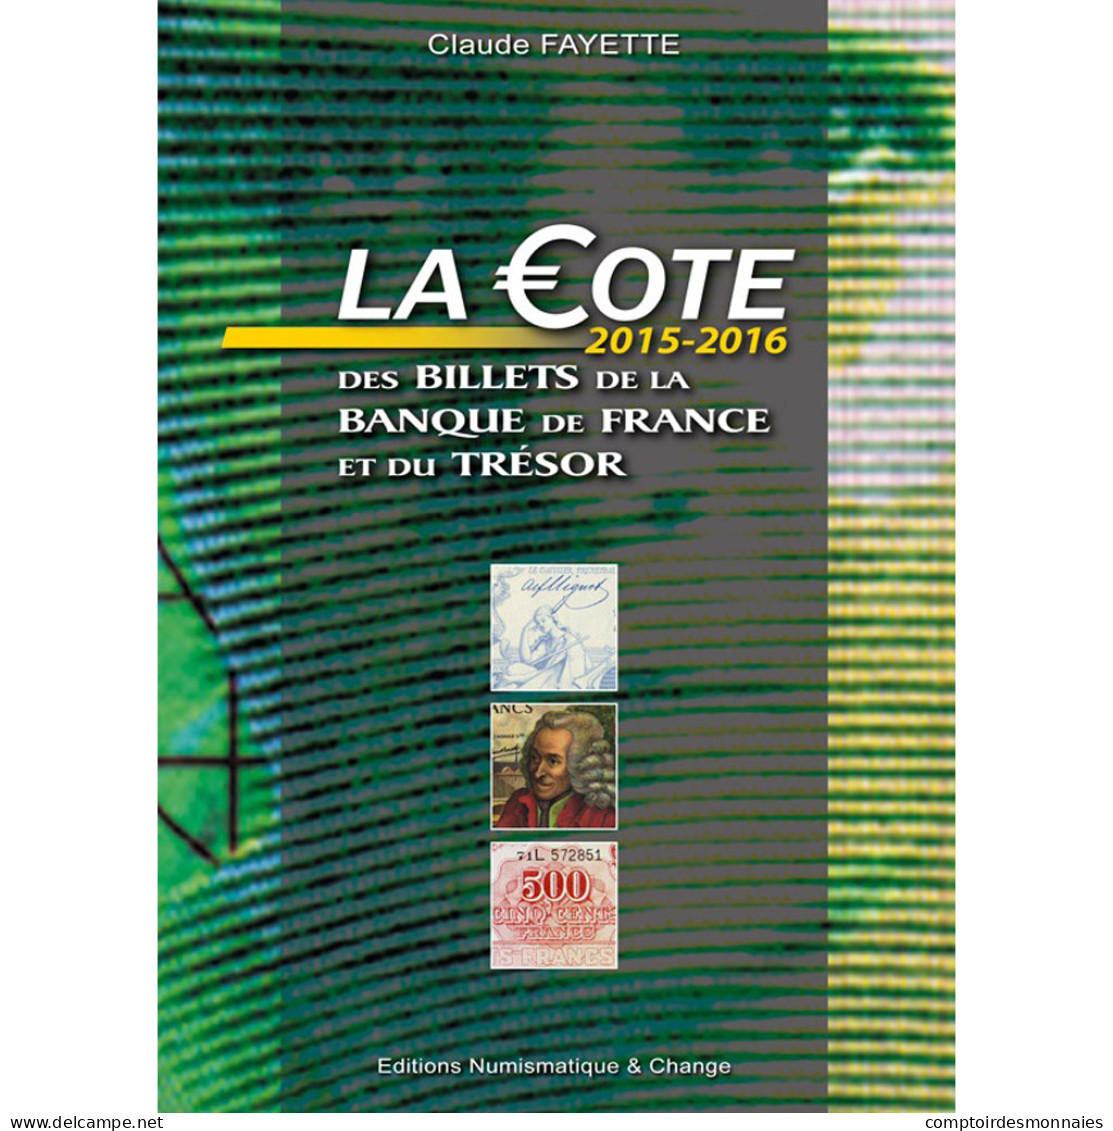 Livre, Billets, France, Fayette 2015/2016, Safe:1790/15 - Livres & Logiciels